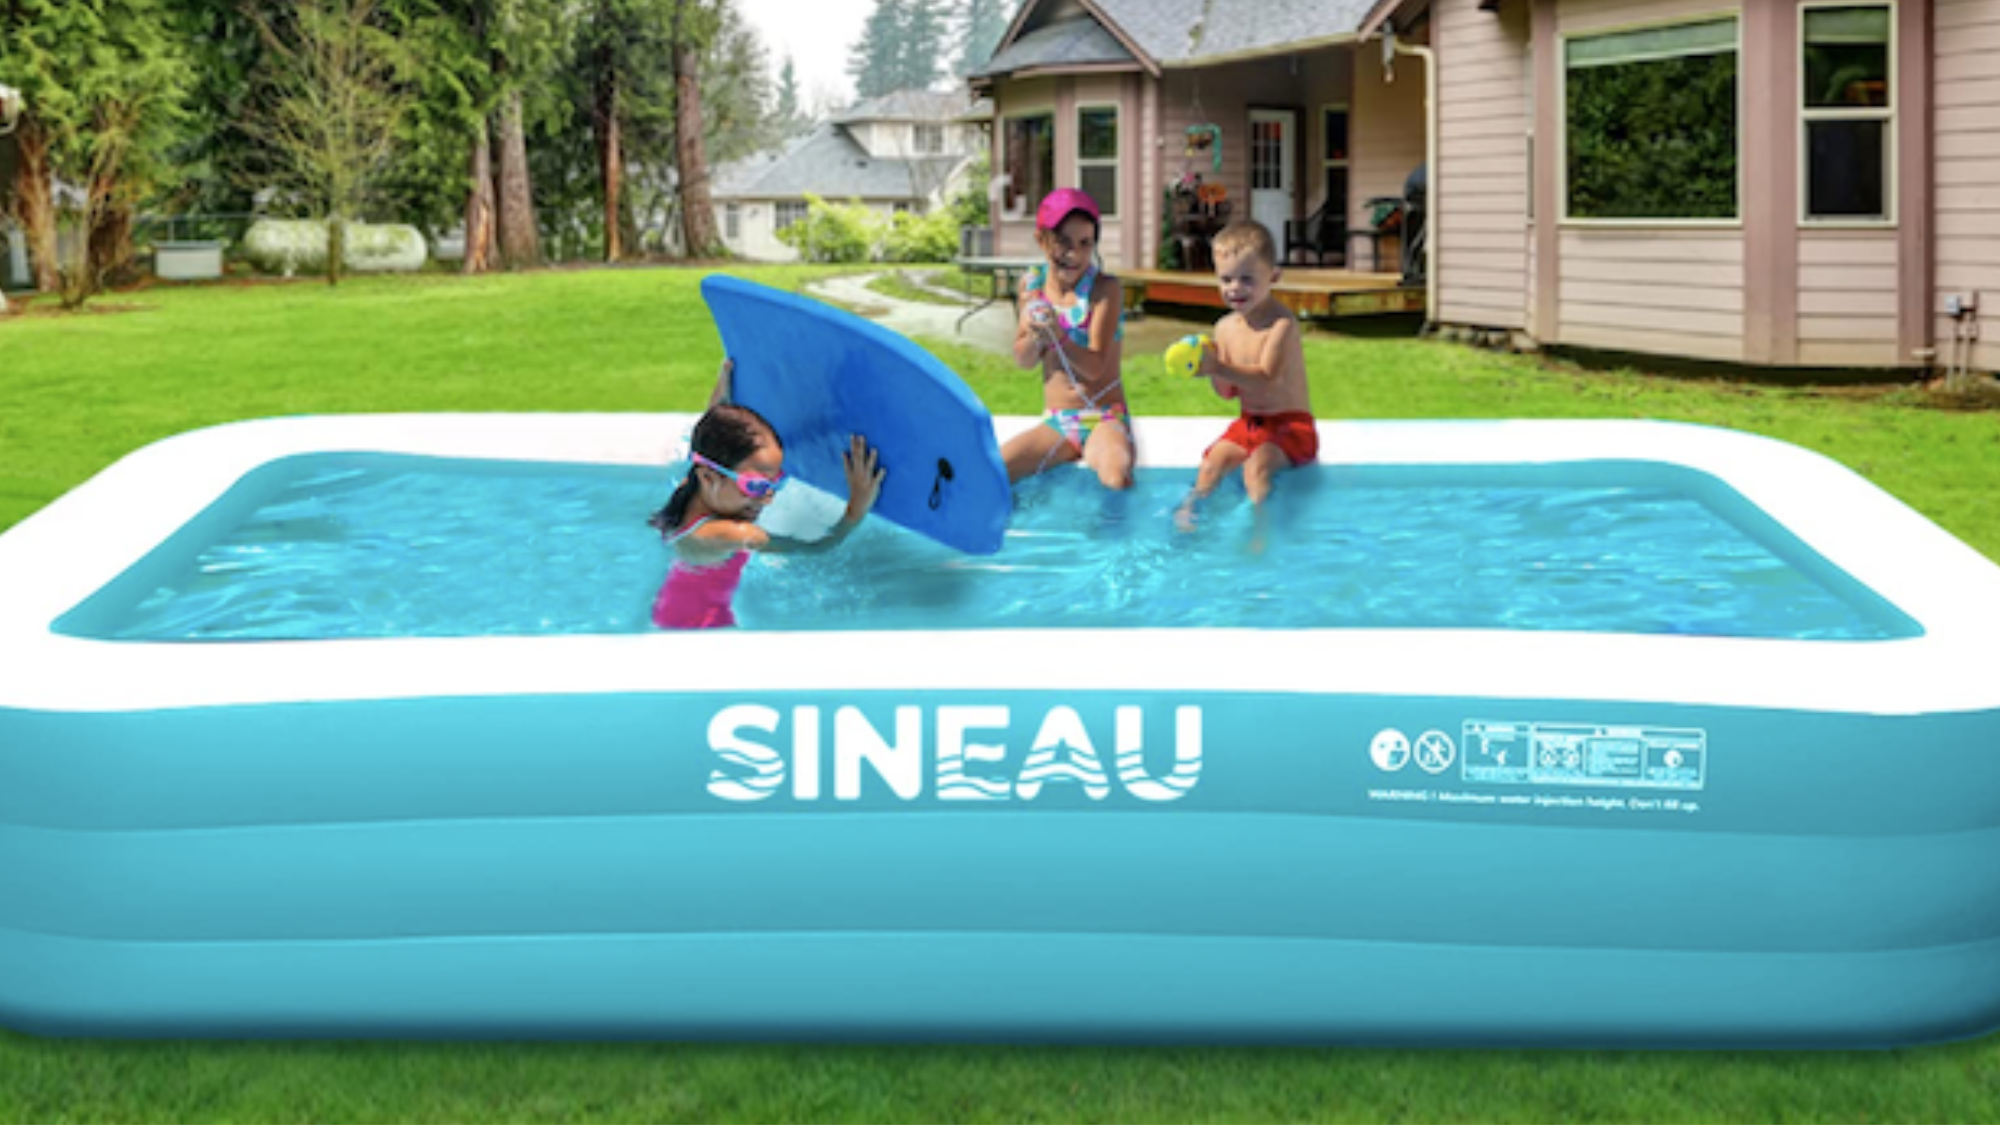 Image of SINEAU inflatable pool